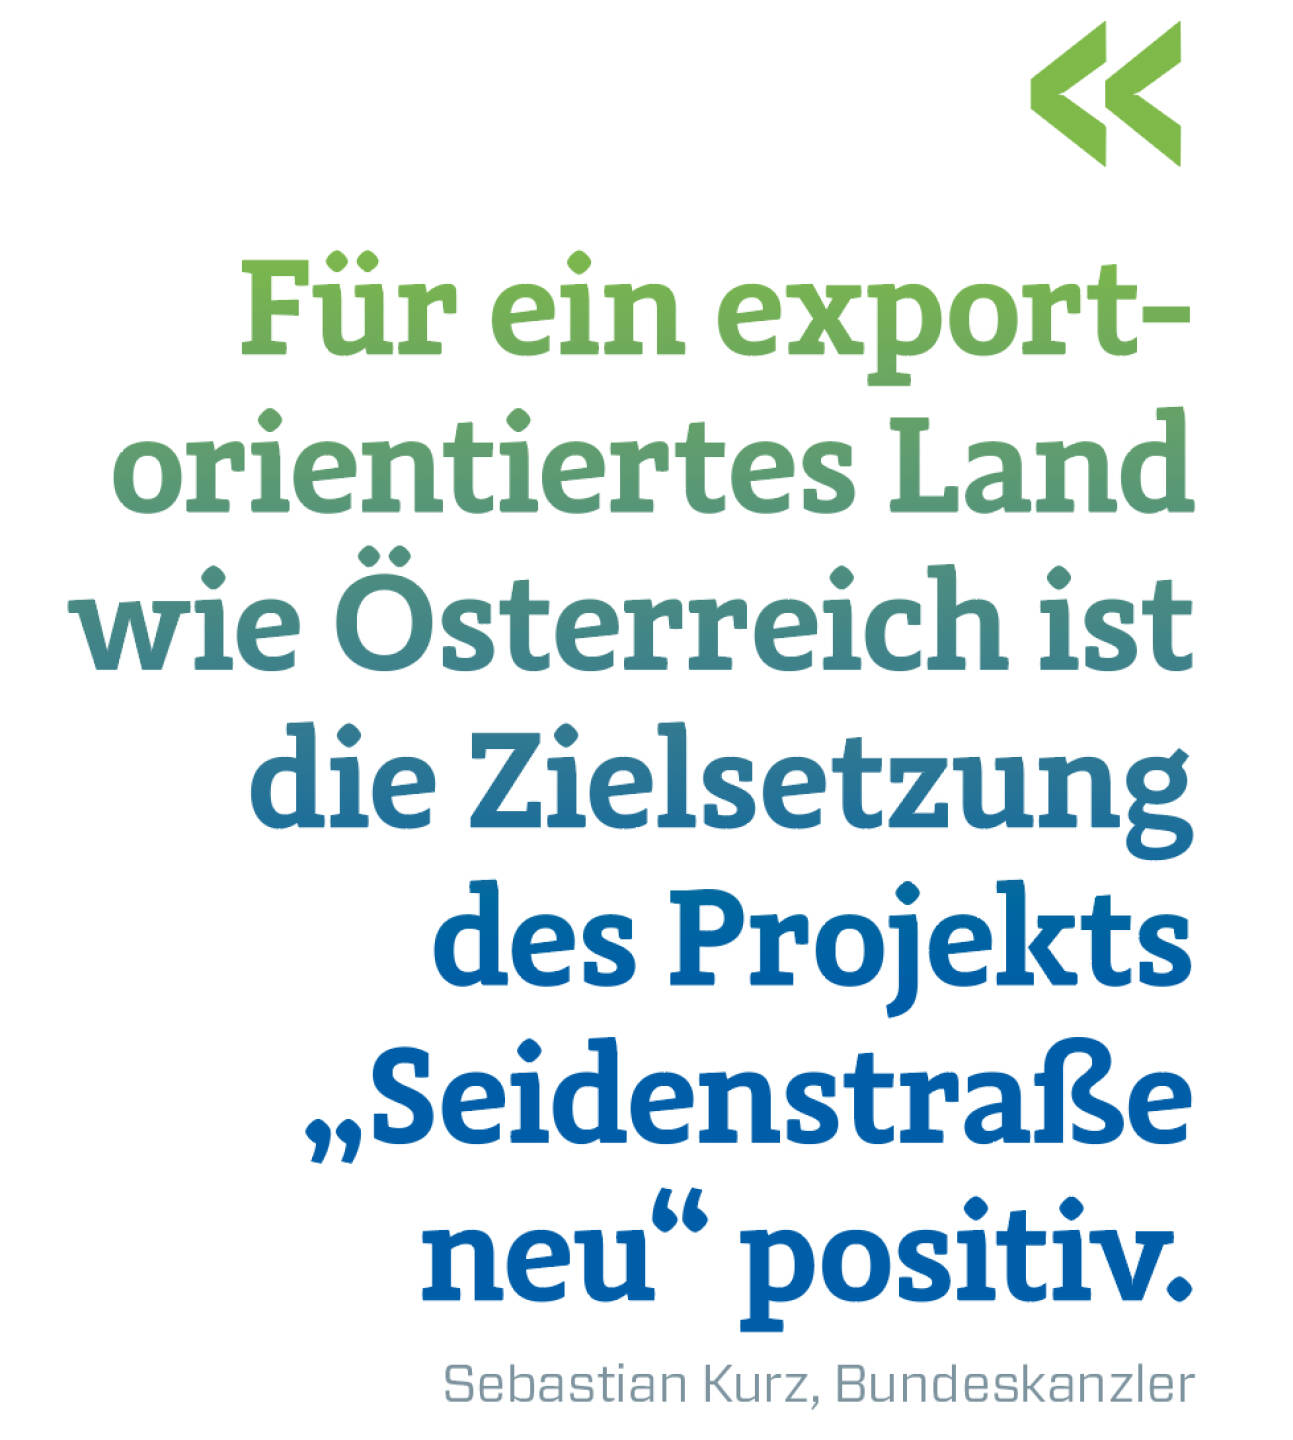 Für ein export-orientiertes Land wie Österreich ist die Zielsetzung des Projekts „Seidenstraße neu“ positiv. 
Sebastian Kurz, Bundeskanzler